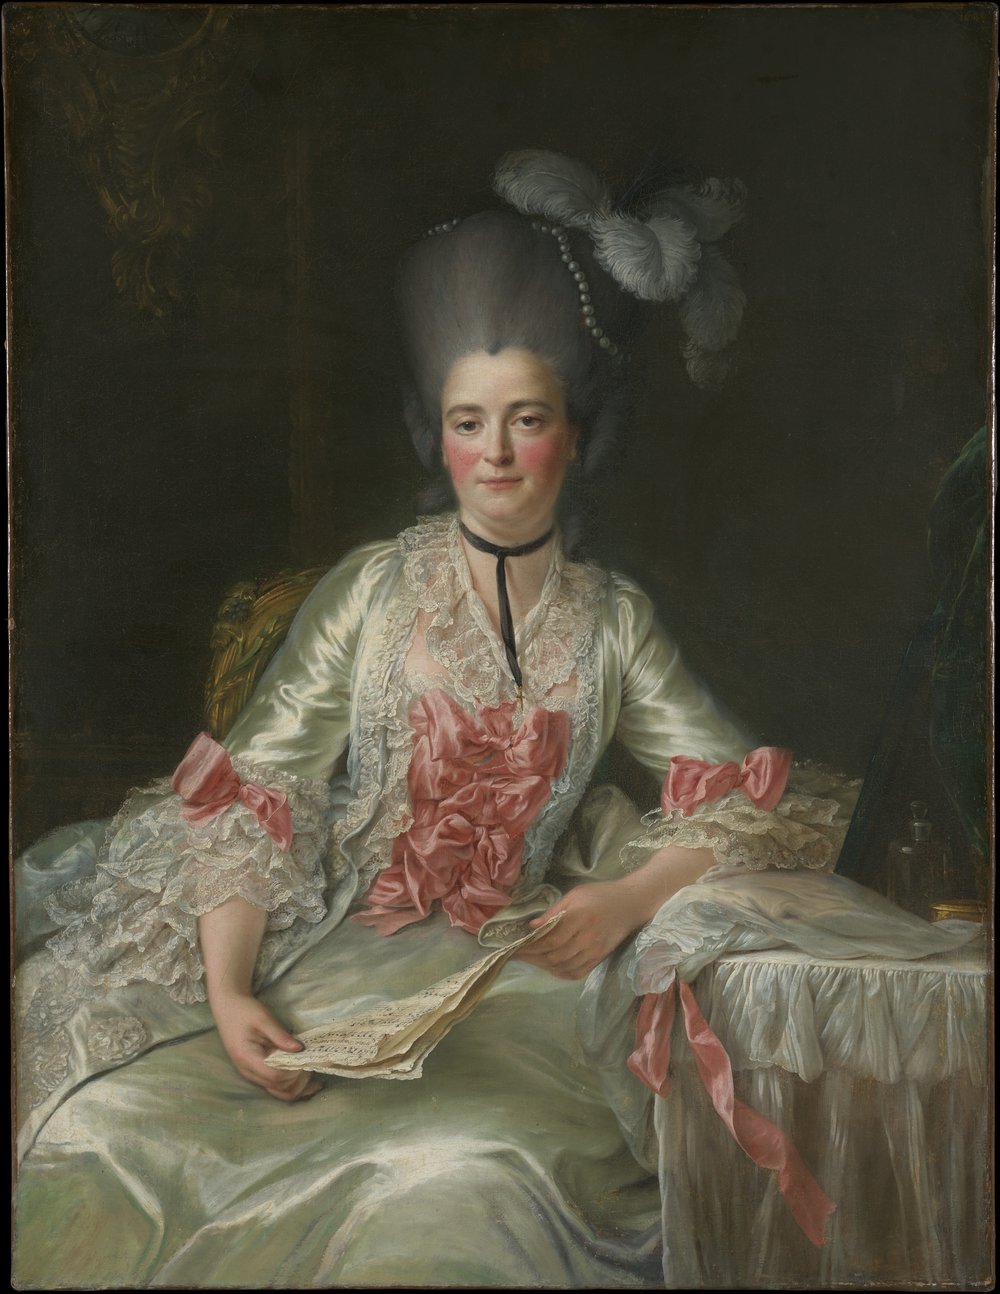 François Hubert Drouais, Marie Rinteau, Called Mademoiselle de Verrières, 1761. Oil on canvas. The Metropolitan Museum of Art, New York, the Jules Bache Collection, 1949, 49.7.47. Cat. 80.